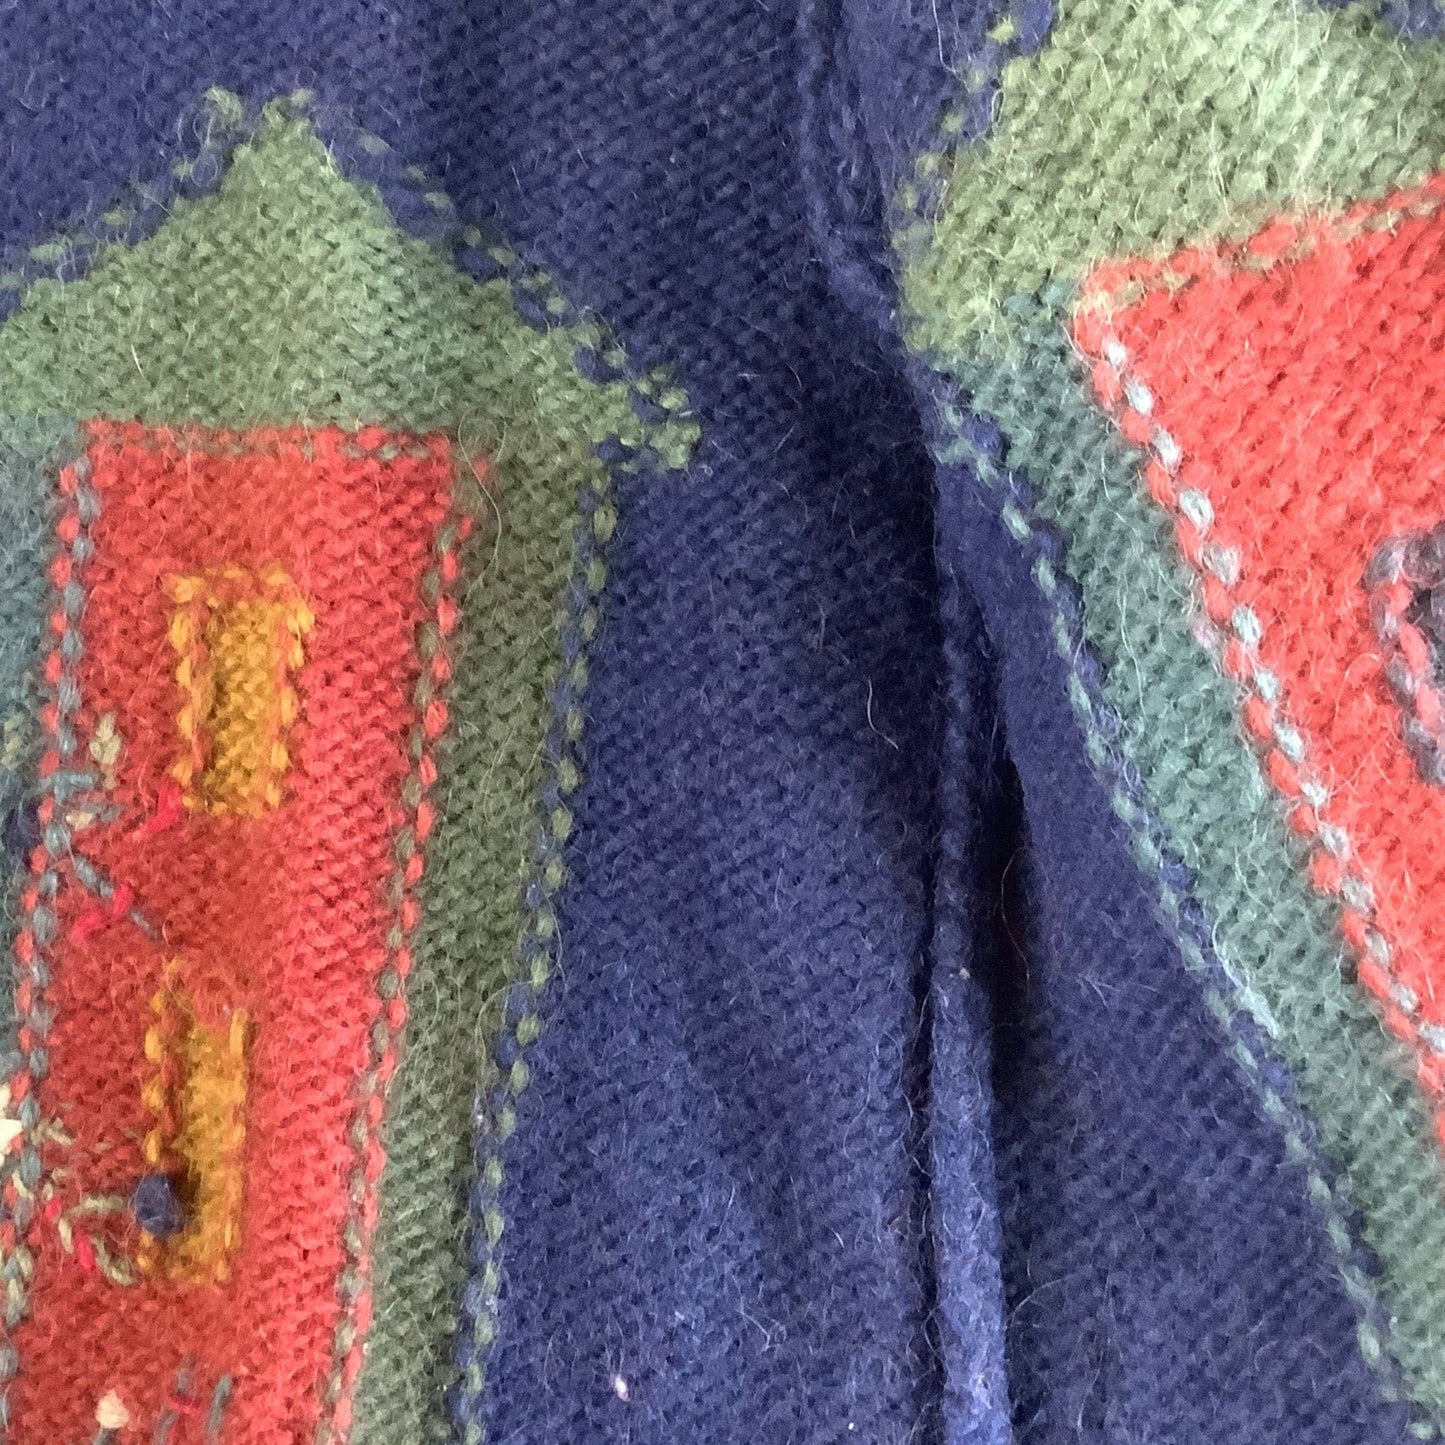 Sirogojno Wool Sweater Medium / Multi / Vintage 1980s